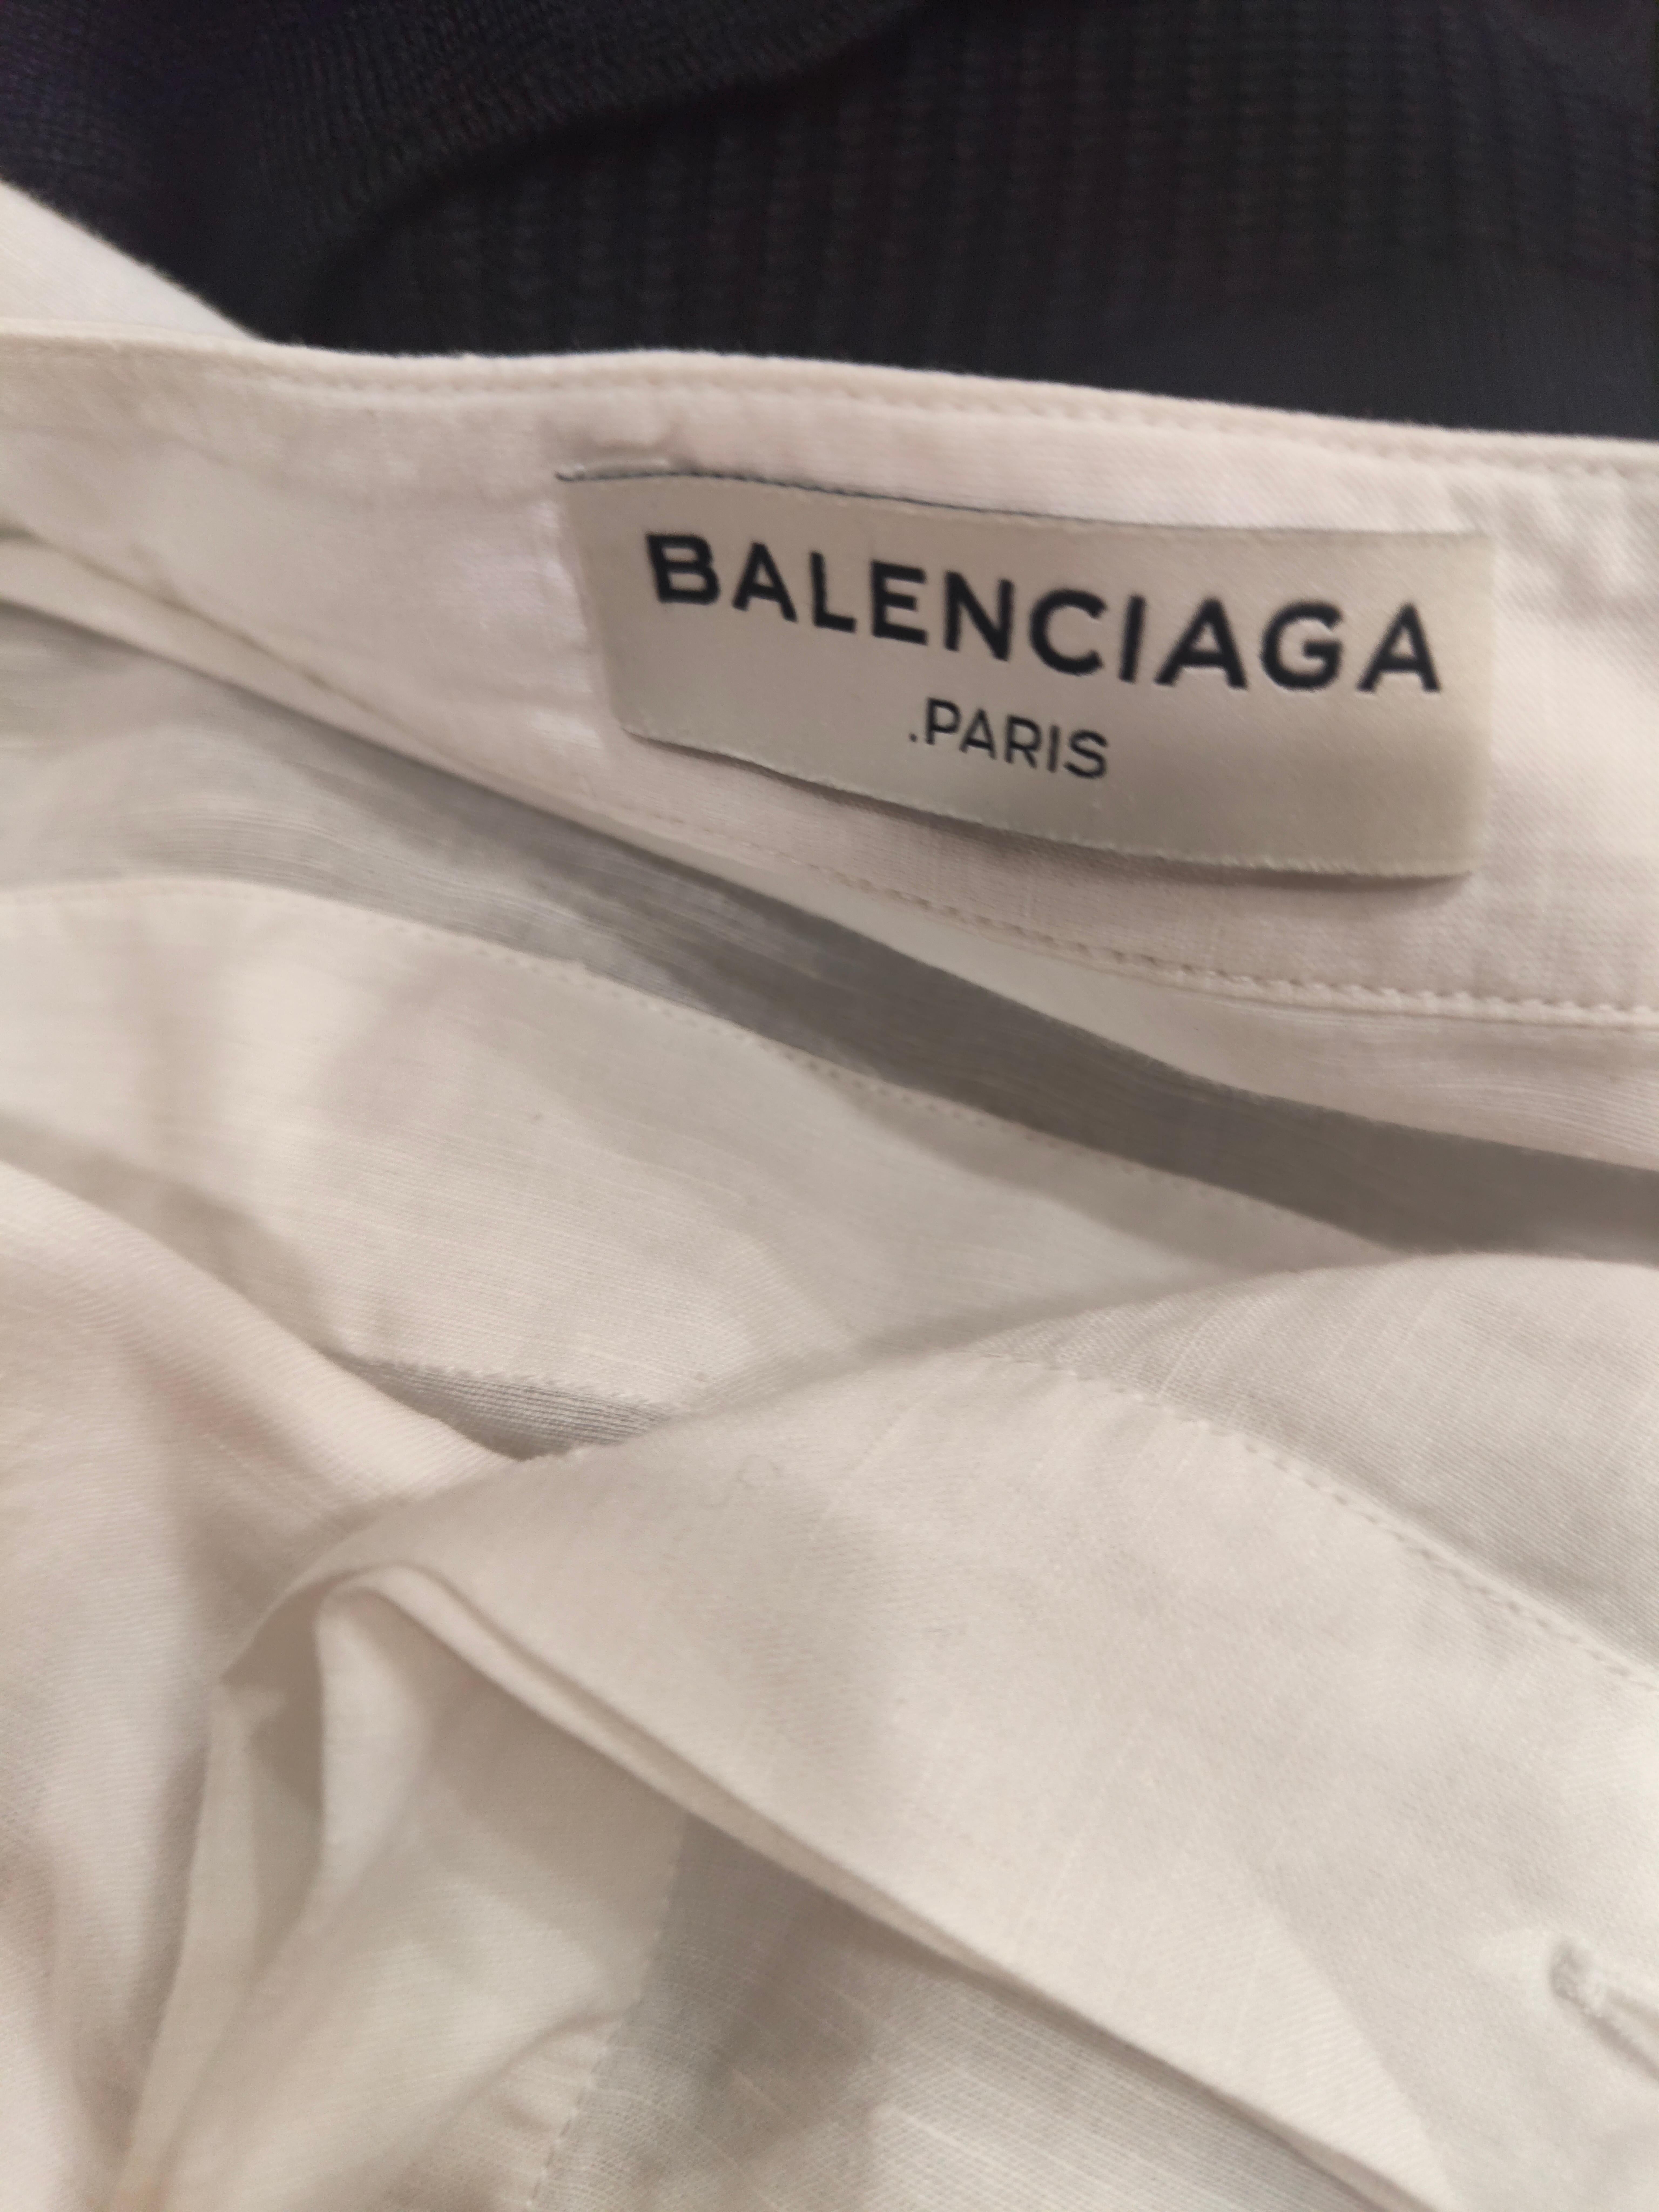 Balenciaga white linen shirt
Size 38